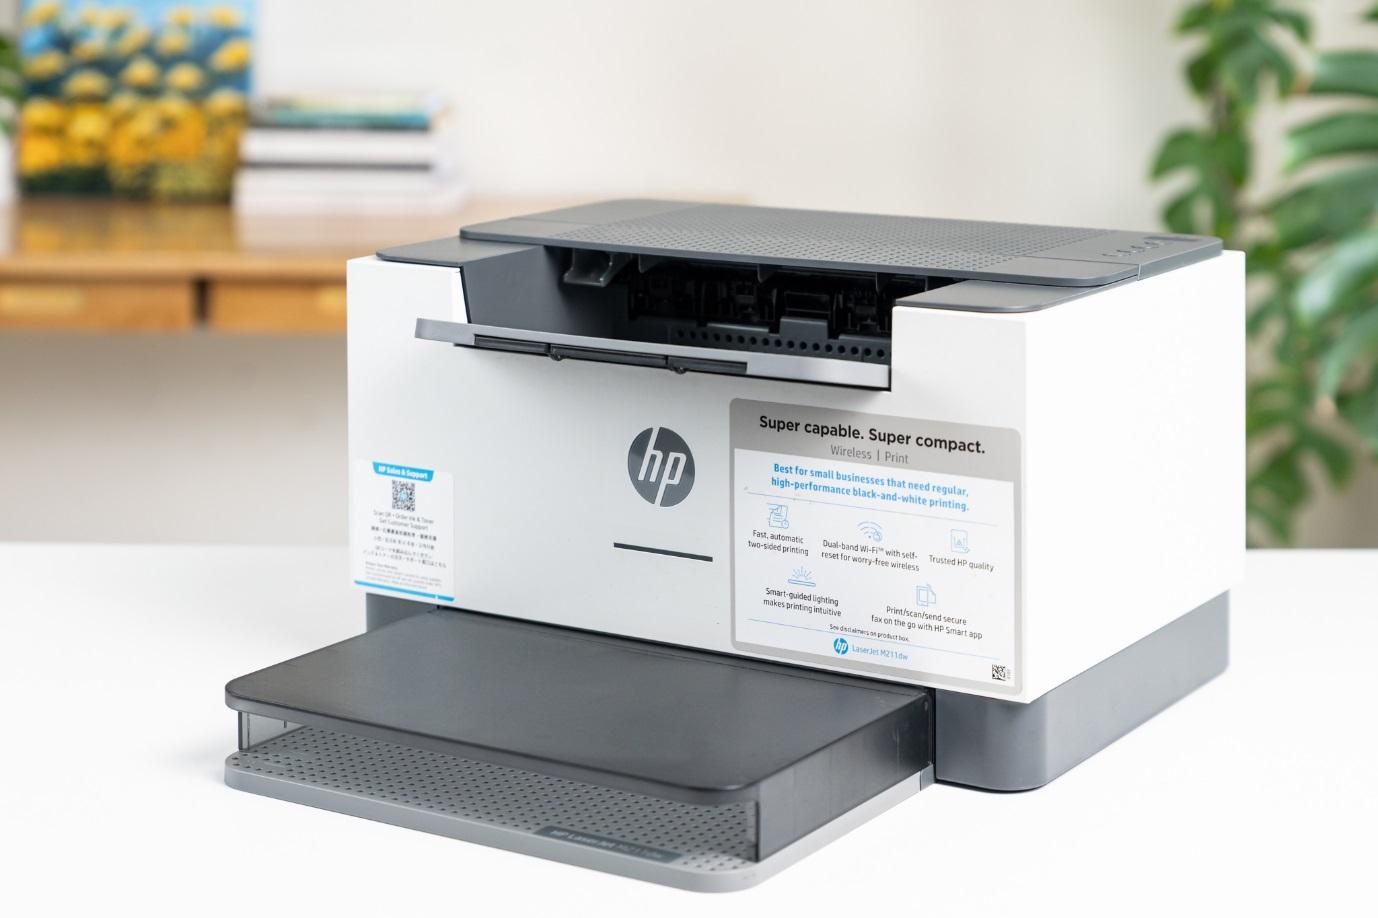 Máy in HP LaserJet M211dw trợ thủ siêu nhỏ gọn với tốc độ in ấn tượng - Ảnh 1.